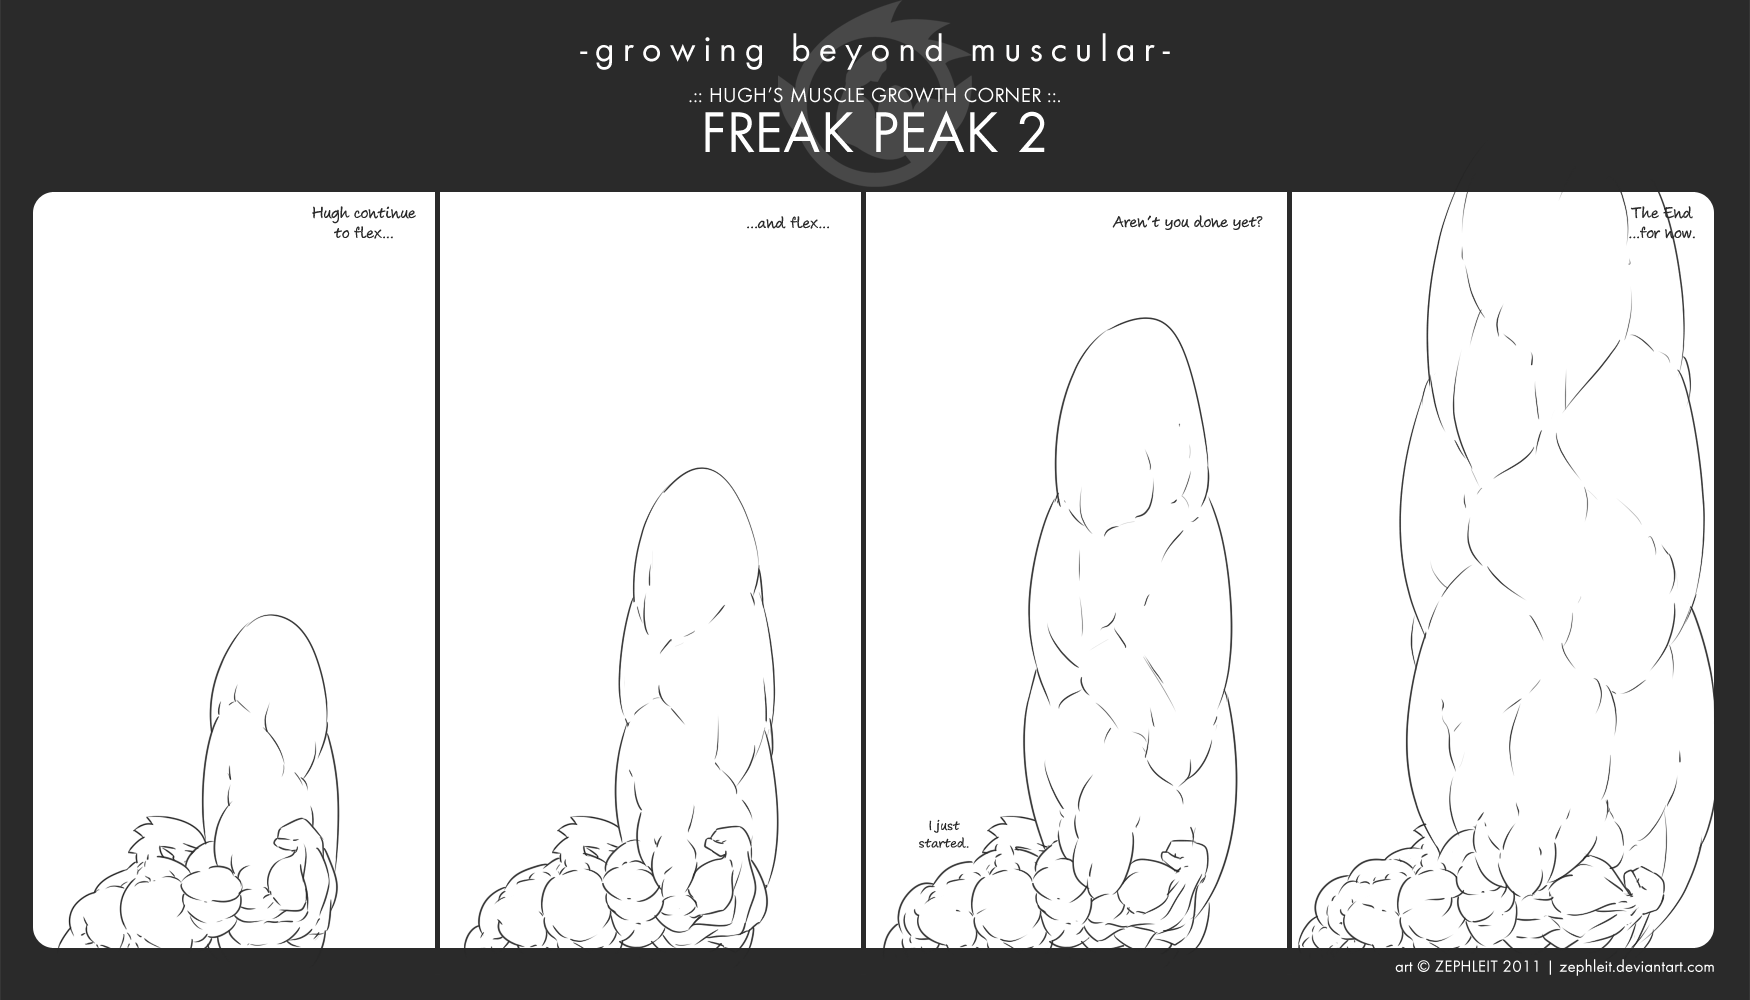 HMGC - Freak Peak 2